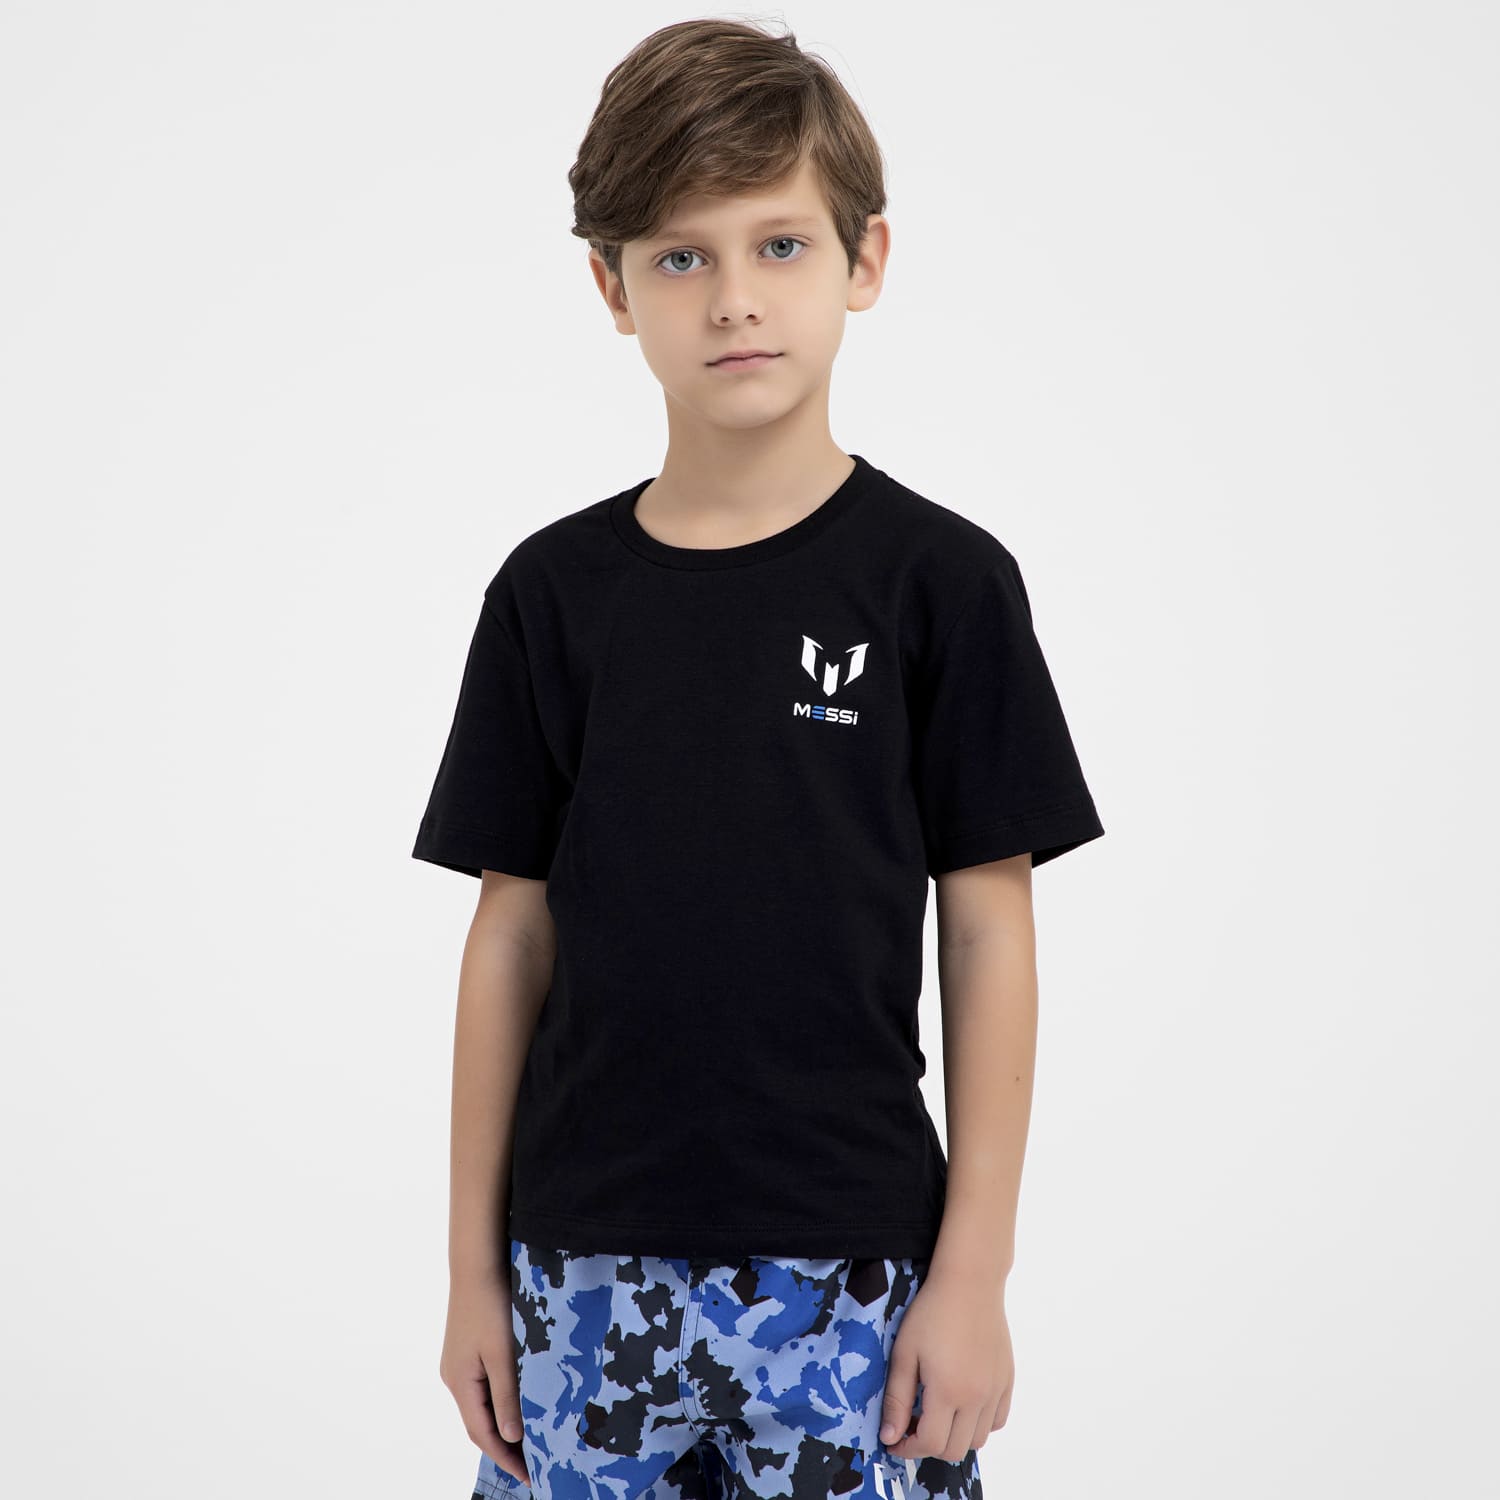 Camiseta Messi Infantil em Malha de Algodão - Casa das Cuecas Online -  Cuecas, Pijamas e mais da Moda masculina